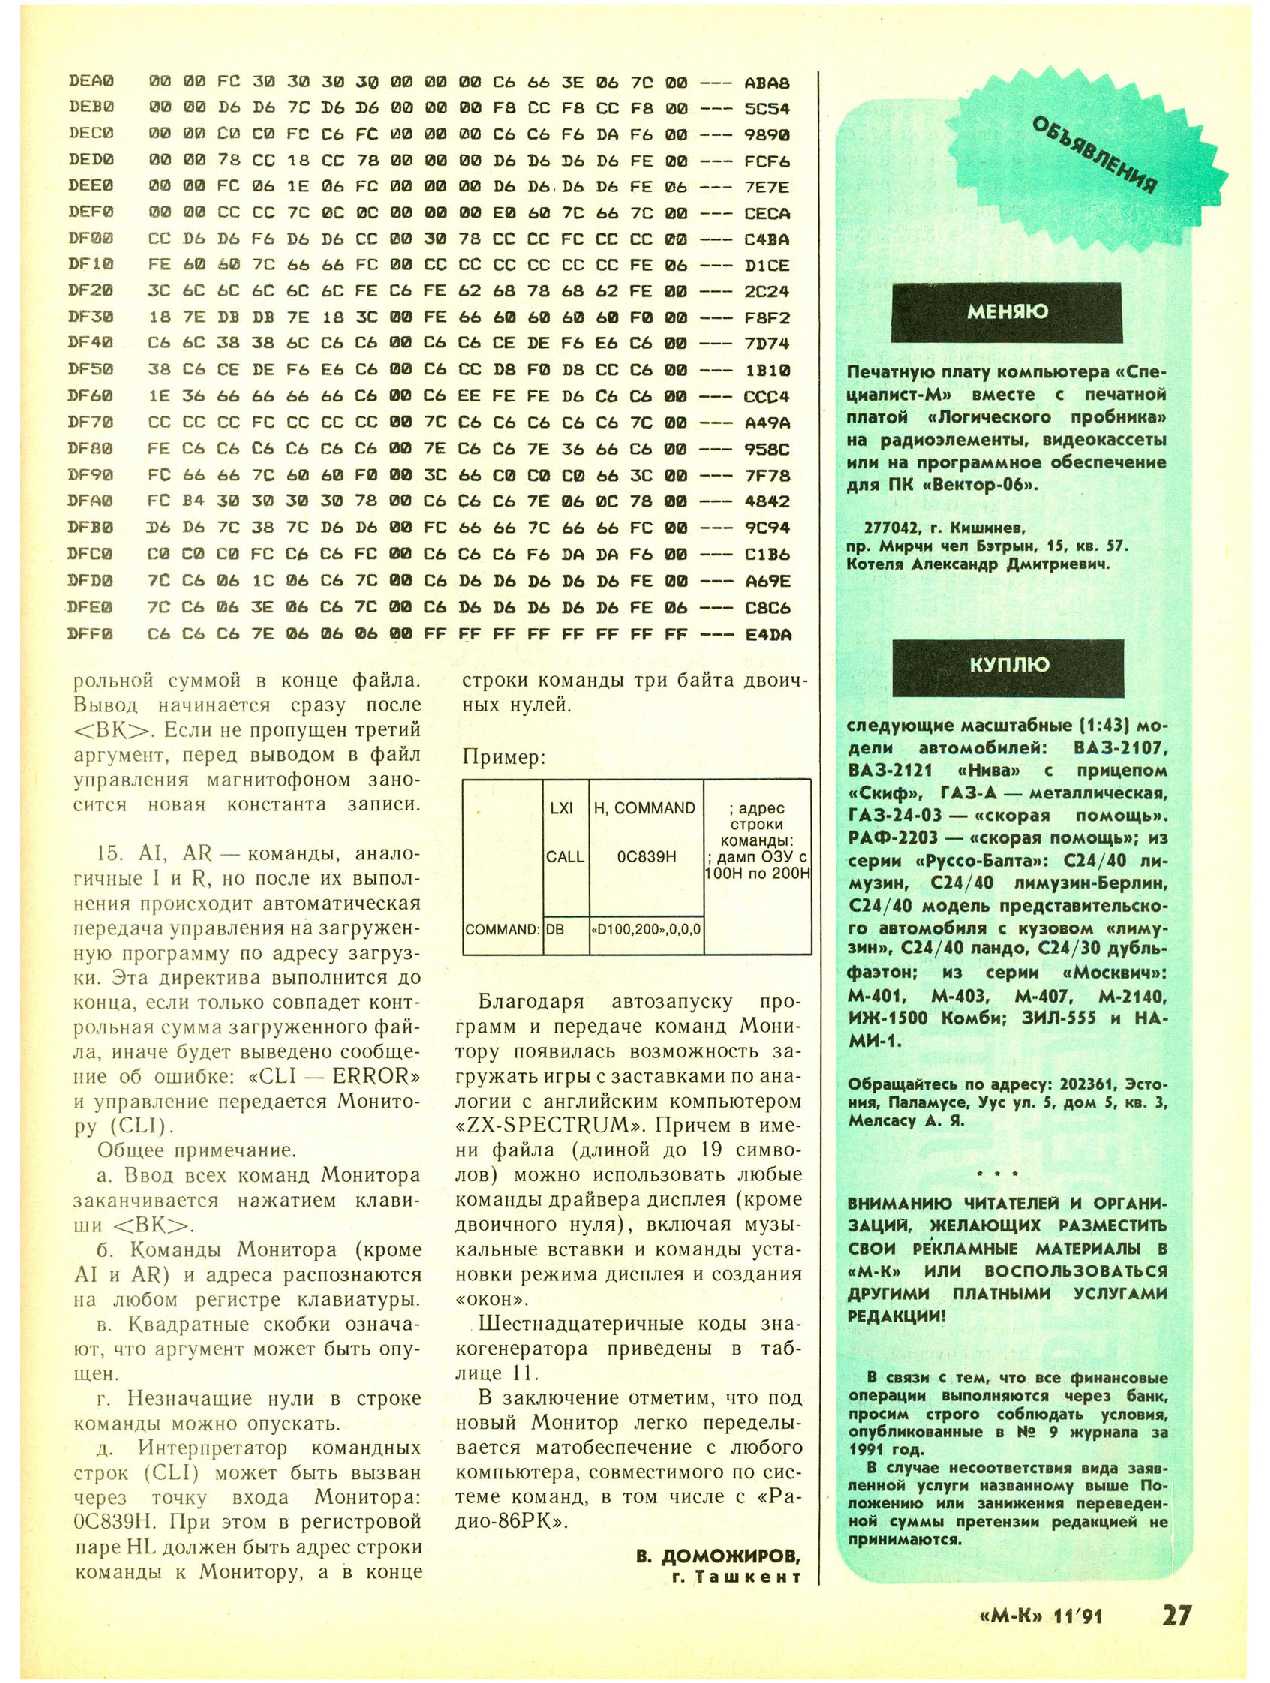 МК 11, 1991, 27 c.